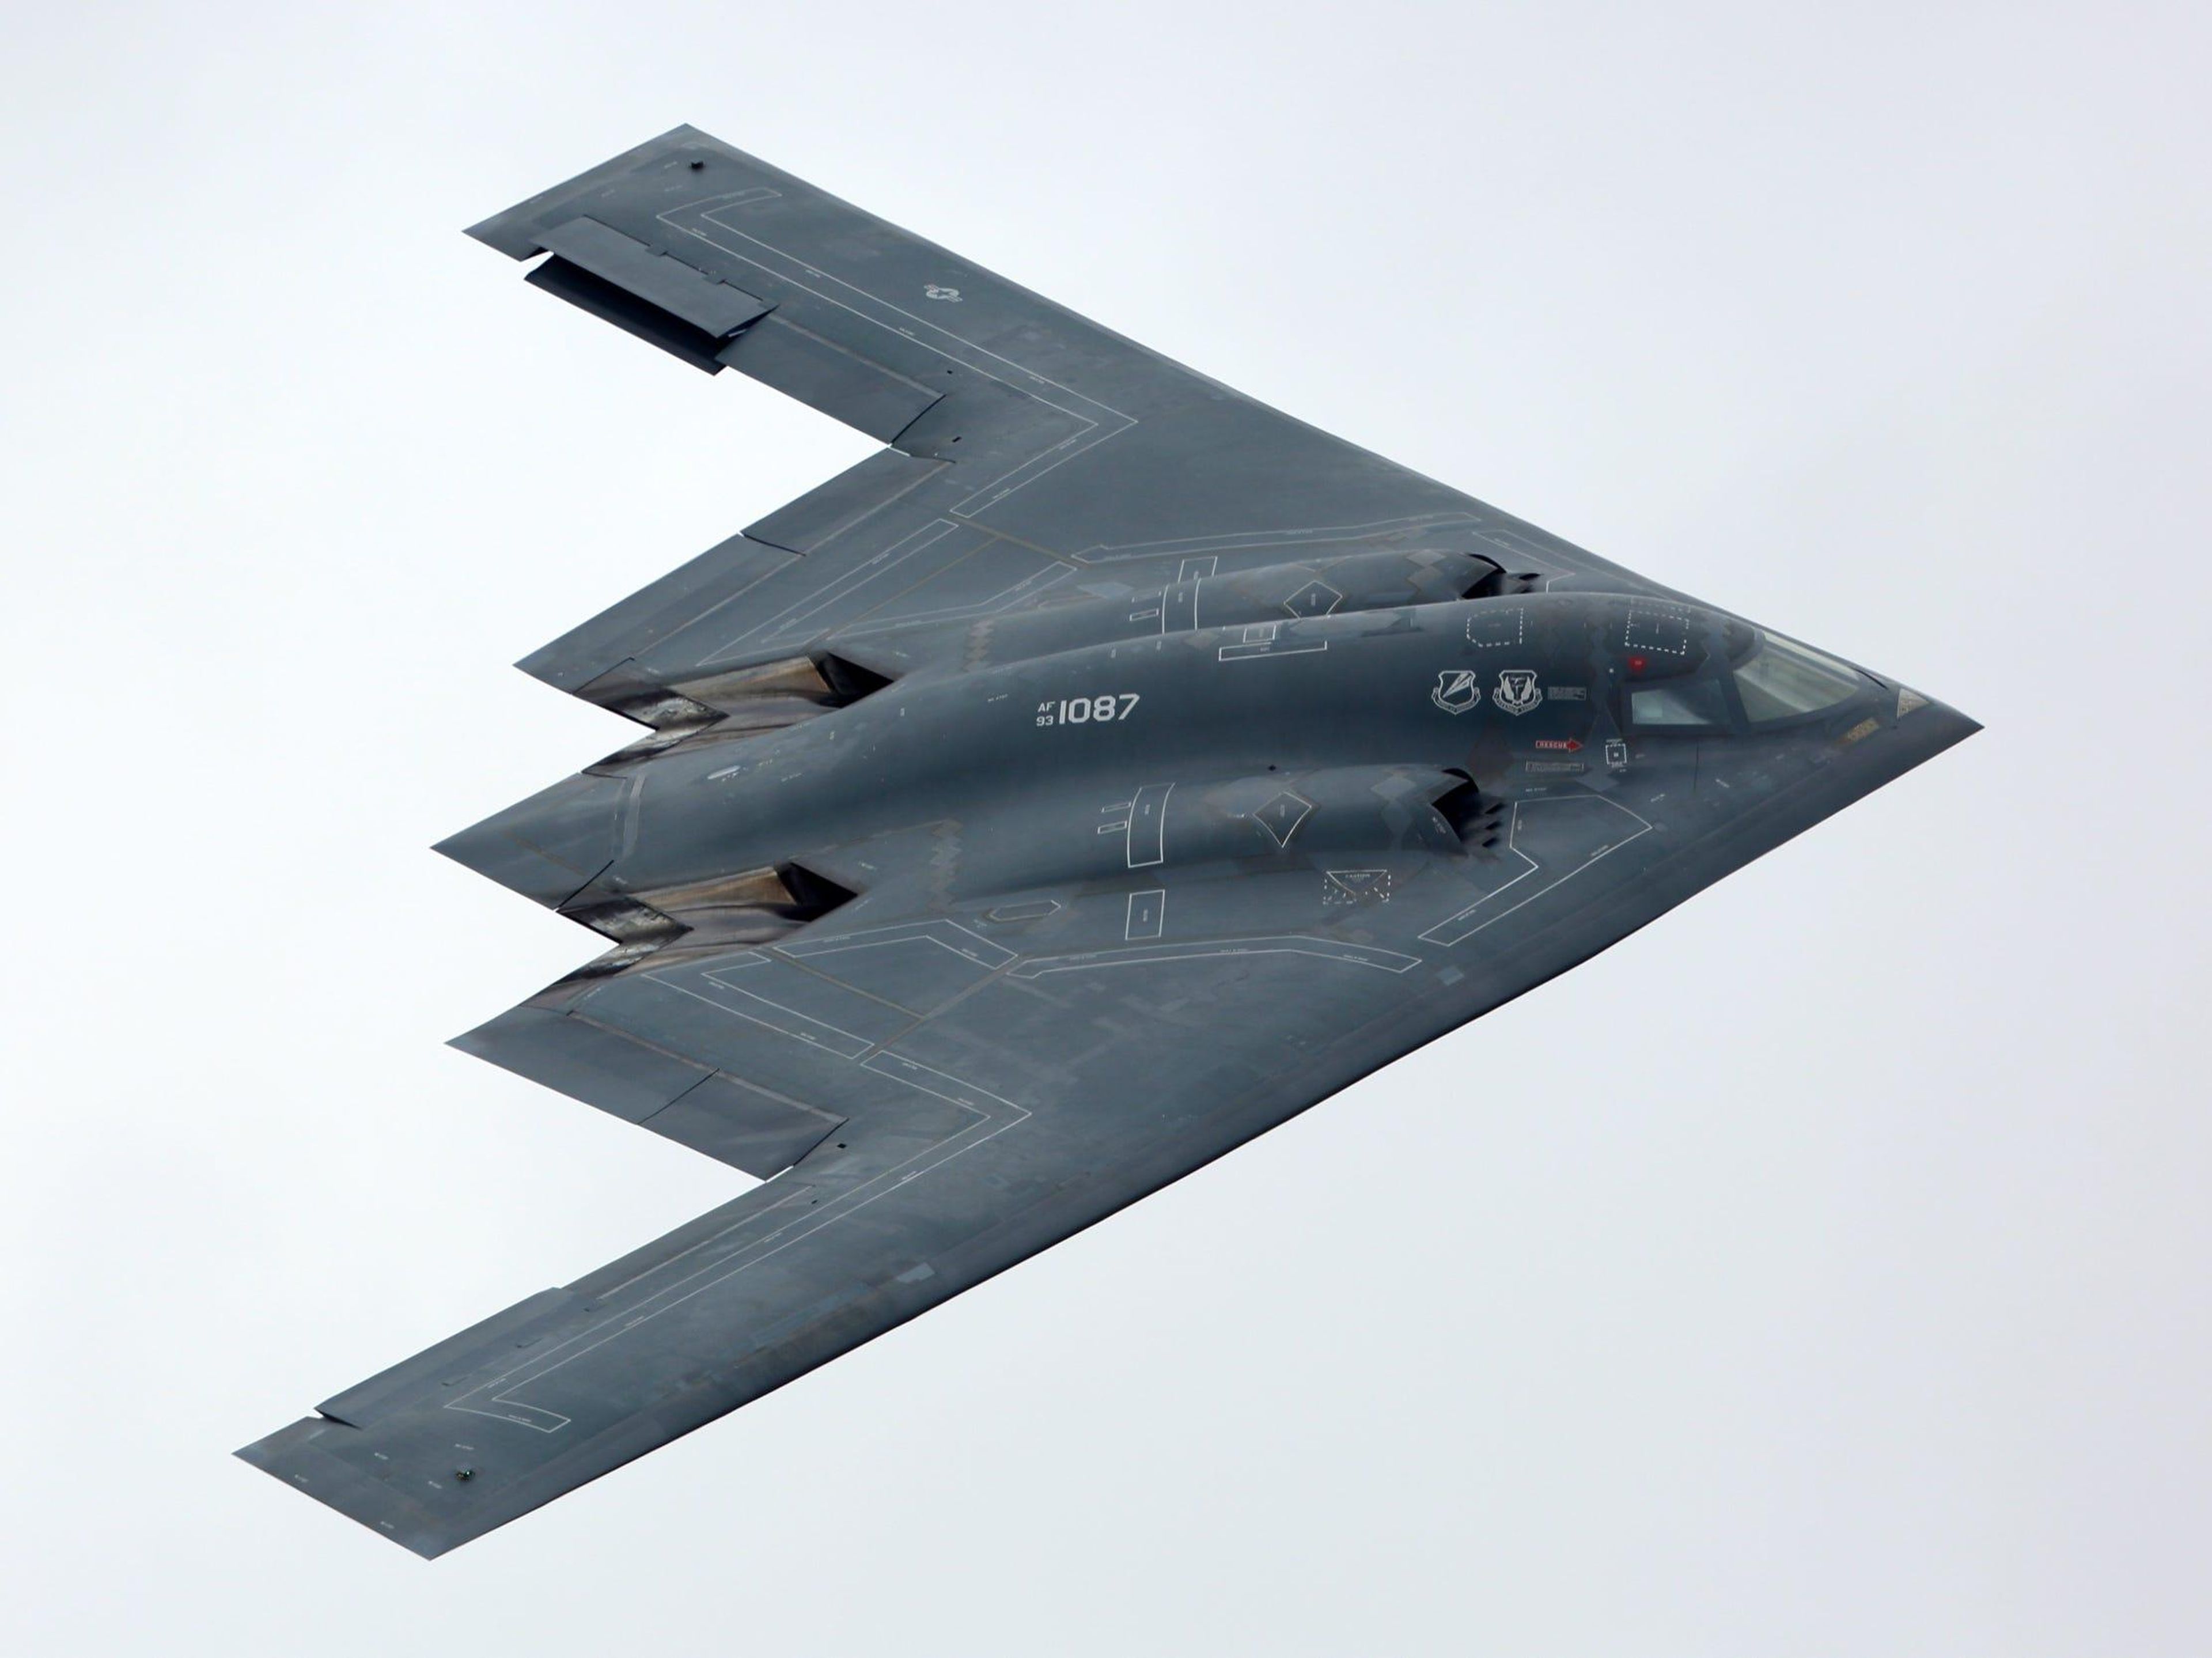 A B-2 Spirit bomber aircraft. Fasttailwind / Shutterstock.com